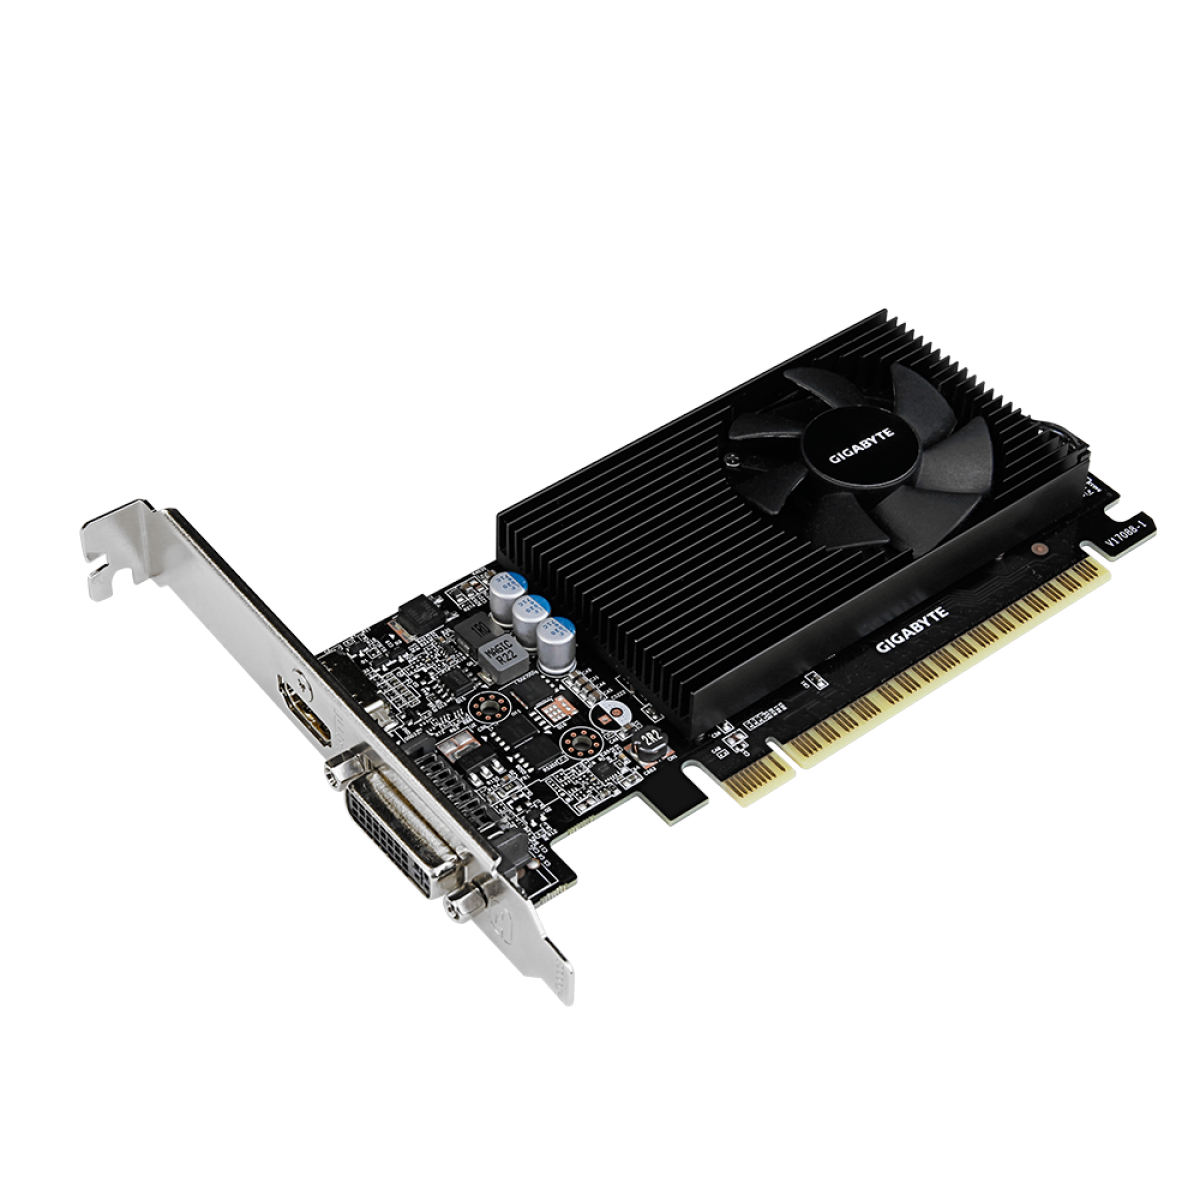 Placa de Vídeo Gigabyte GeForce GT 730, 2GB, GDDR5, 64bit, GV-N730D5-2GL